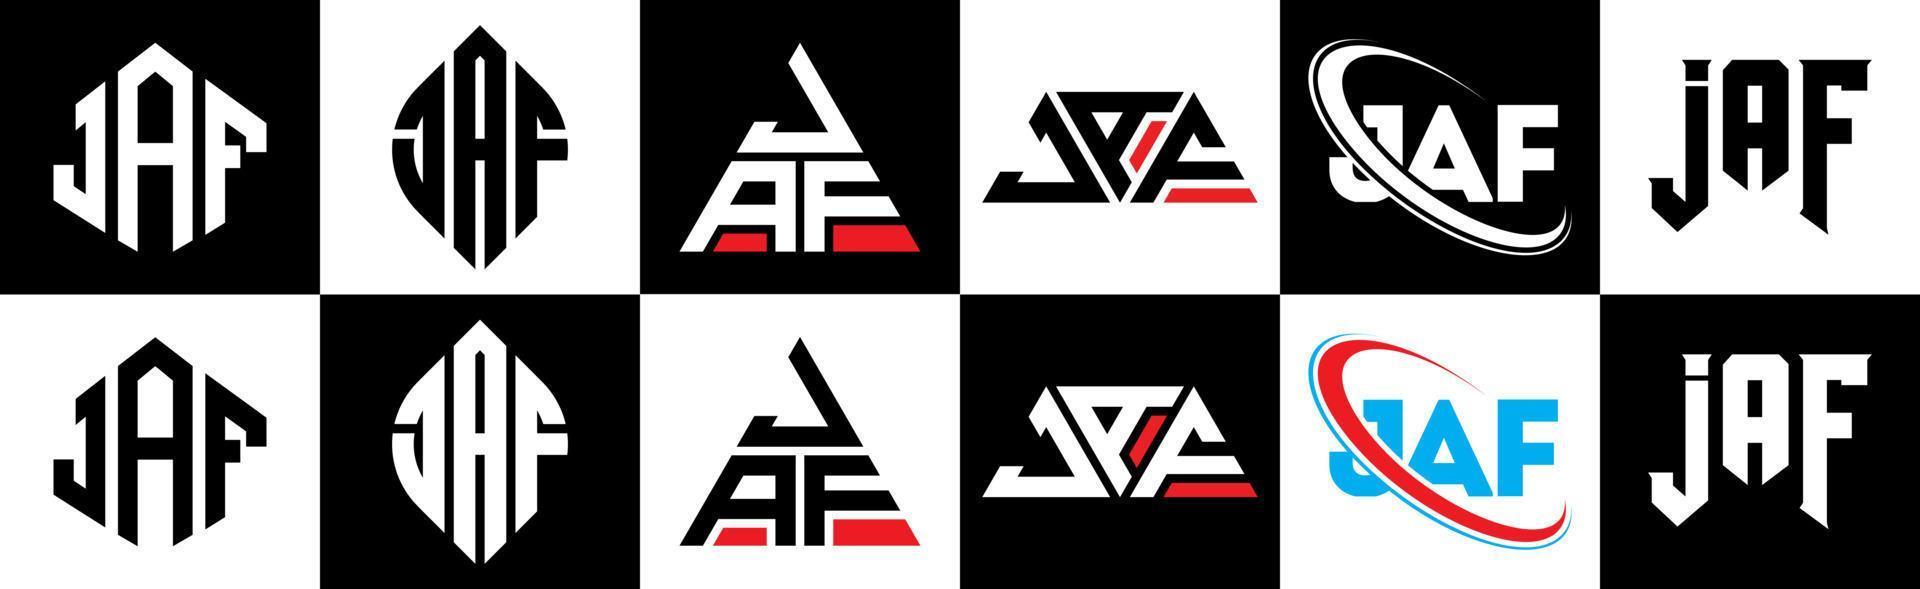 Jaf-Buchstaben-Logo-Design in sechs Stilen. jaf polygon, kreis, dreieck, sechseck, flacher und einfacher stil mit schwarz-weißem buchstabenlogo in einer zeichenfläche. Jaf minimalistisches und klassisches Logo vektor